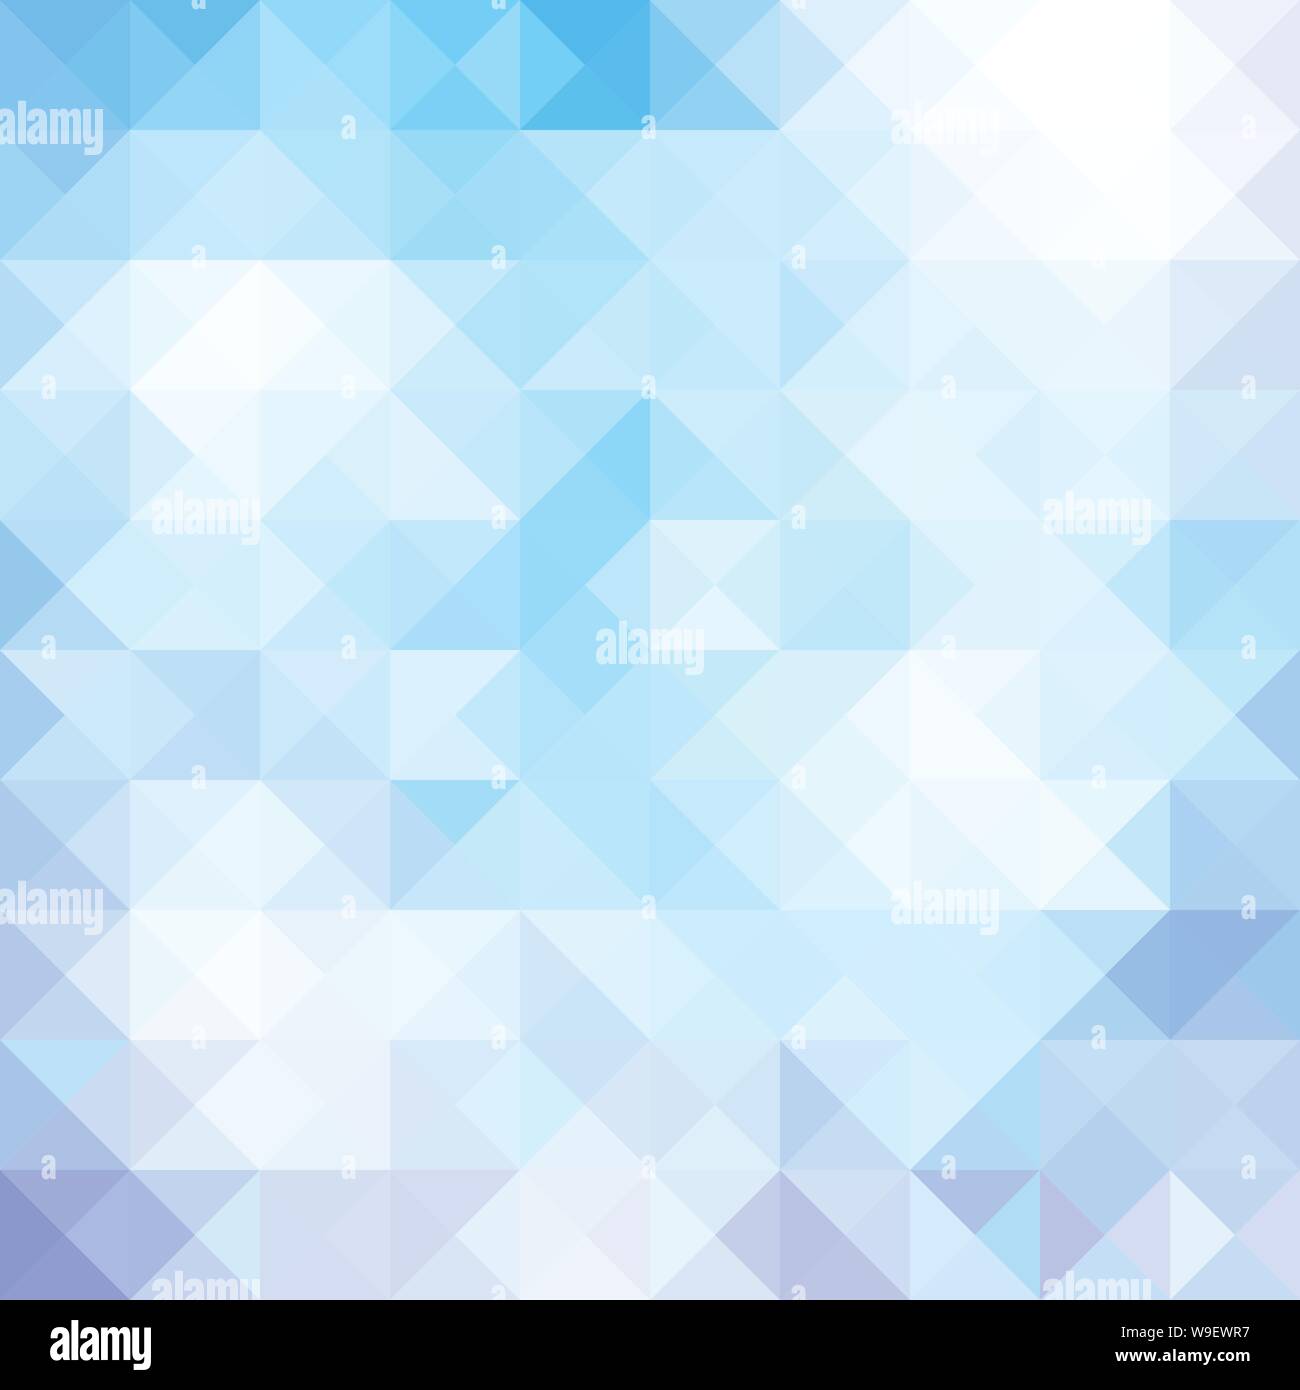 Abstrakt Blau Dreieck Hintergrund enthält transparente Objekte Stock Vektor